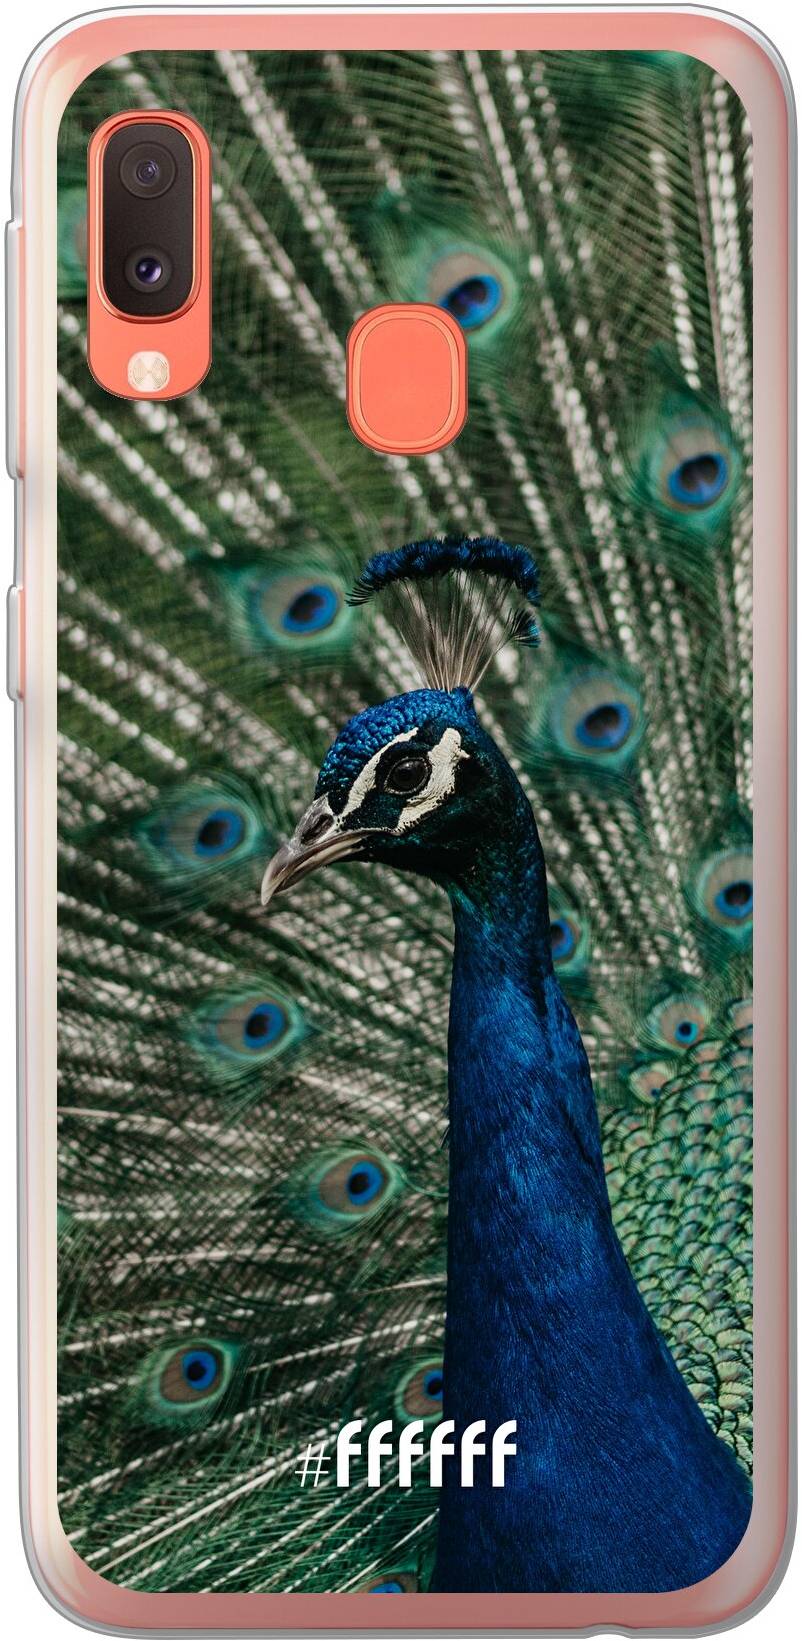 Peacock Galaxy A20e